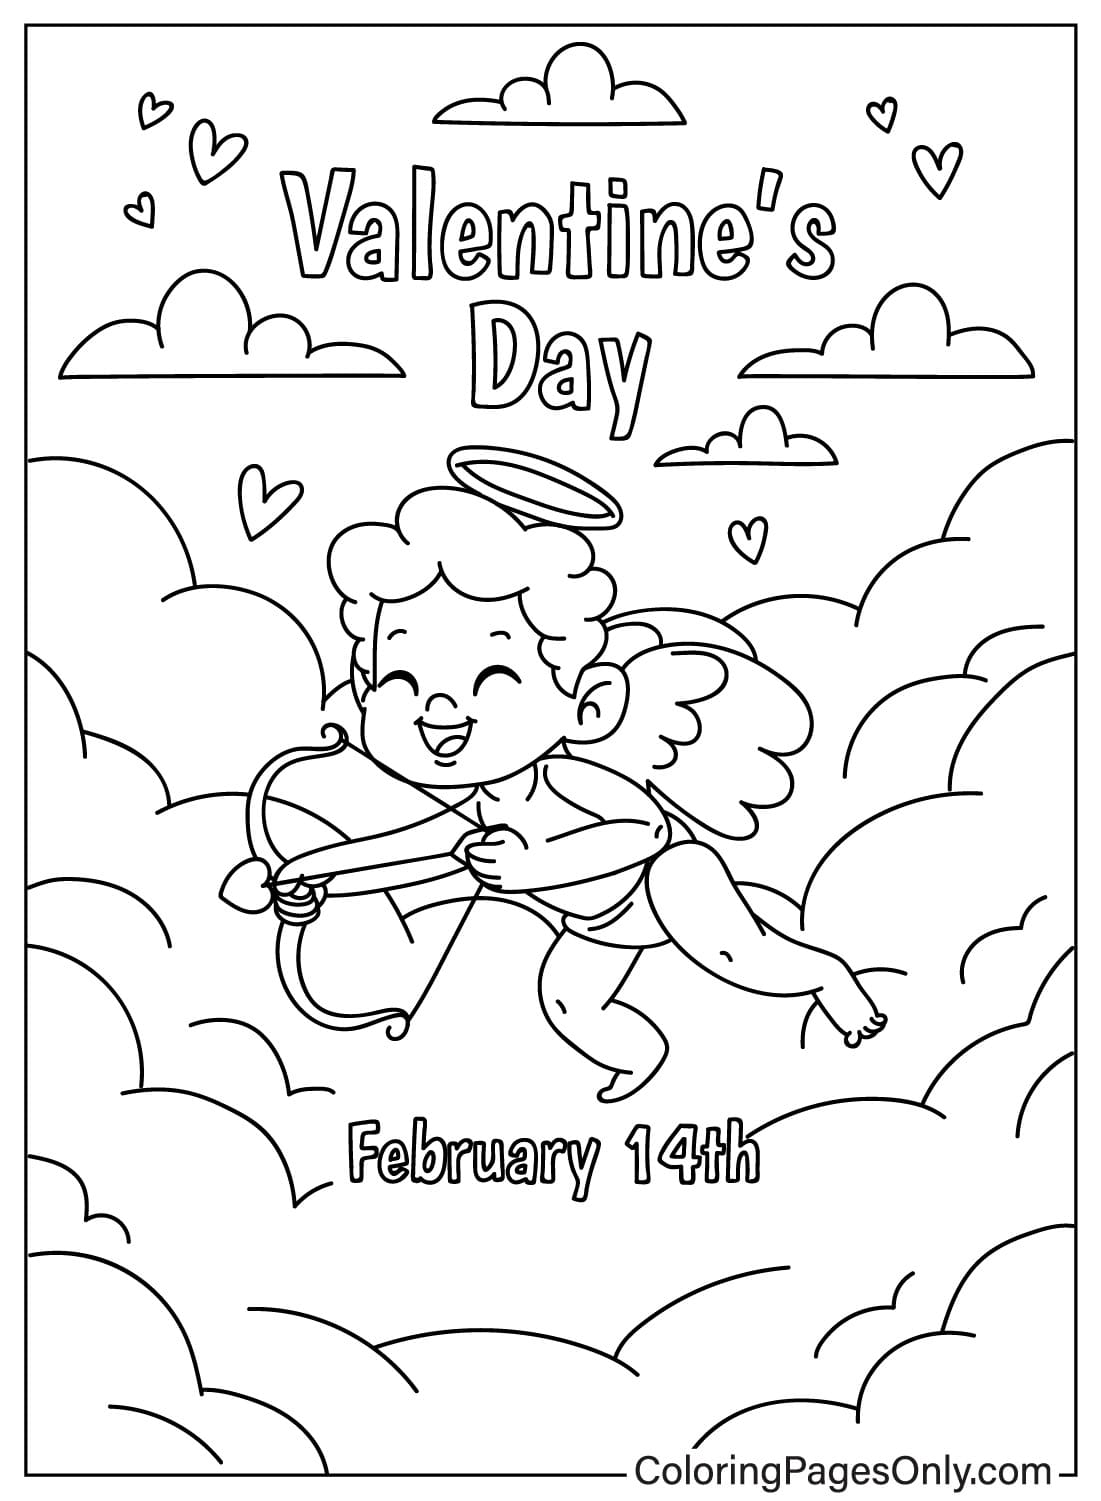 Página para colorear de Cupido Día de San Valentín de Cupido